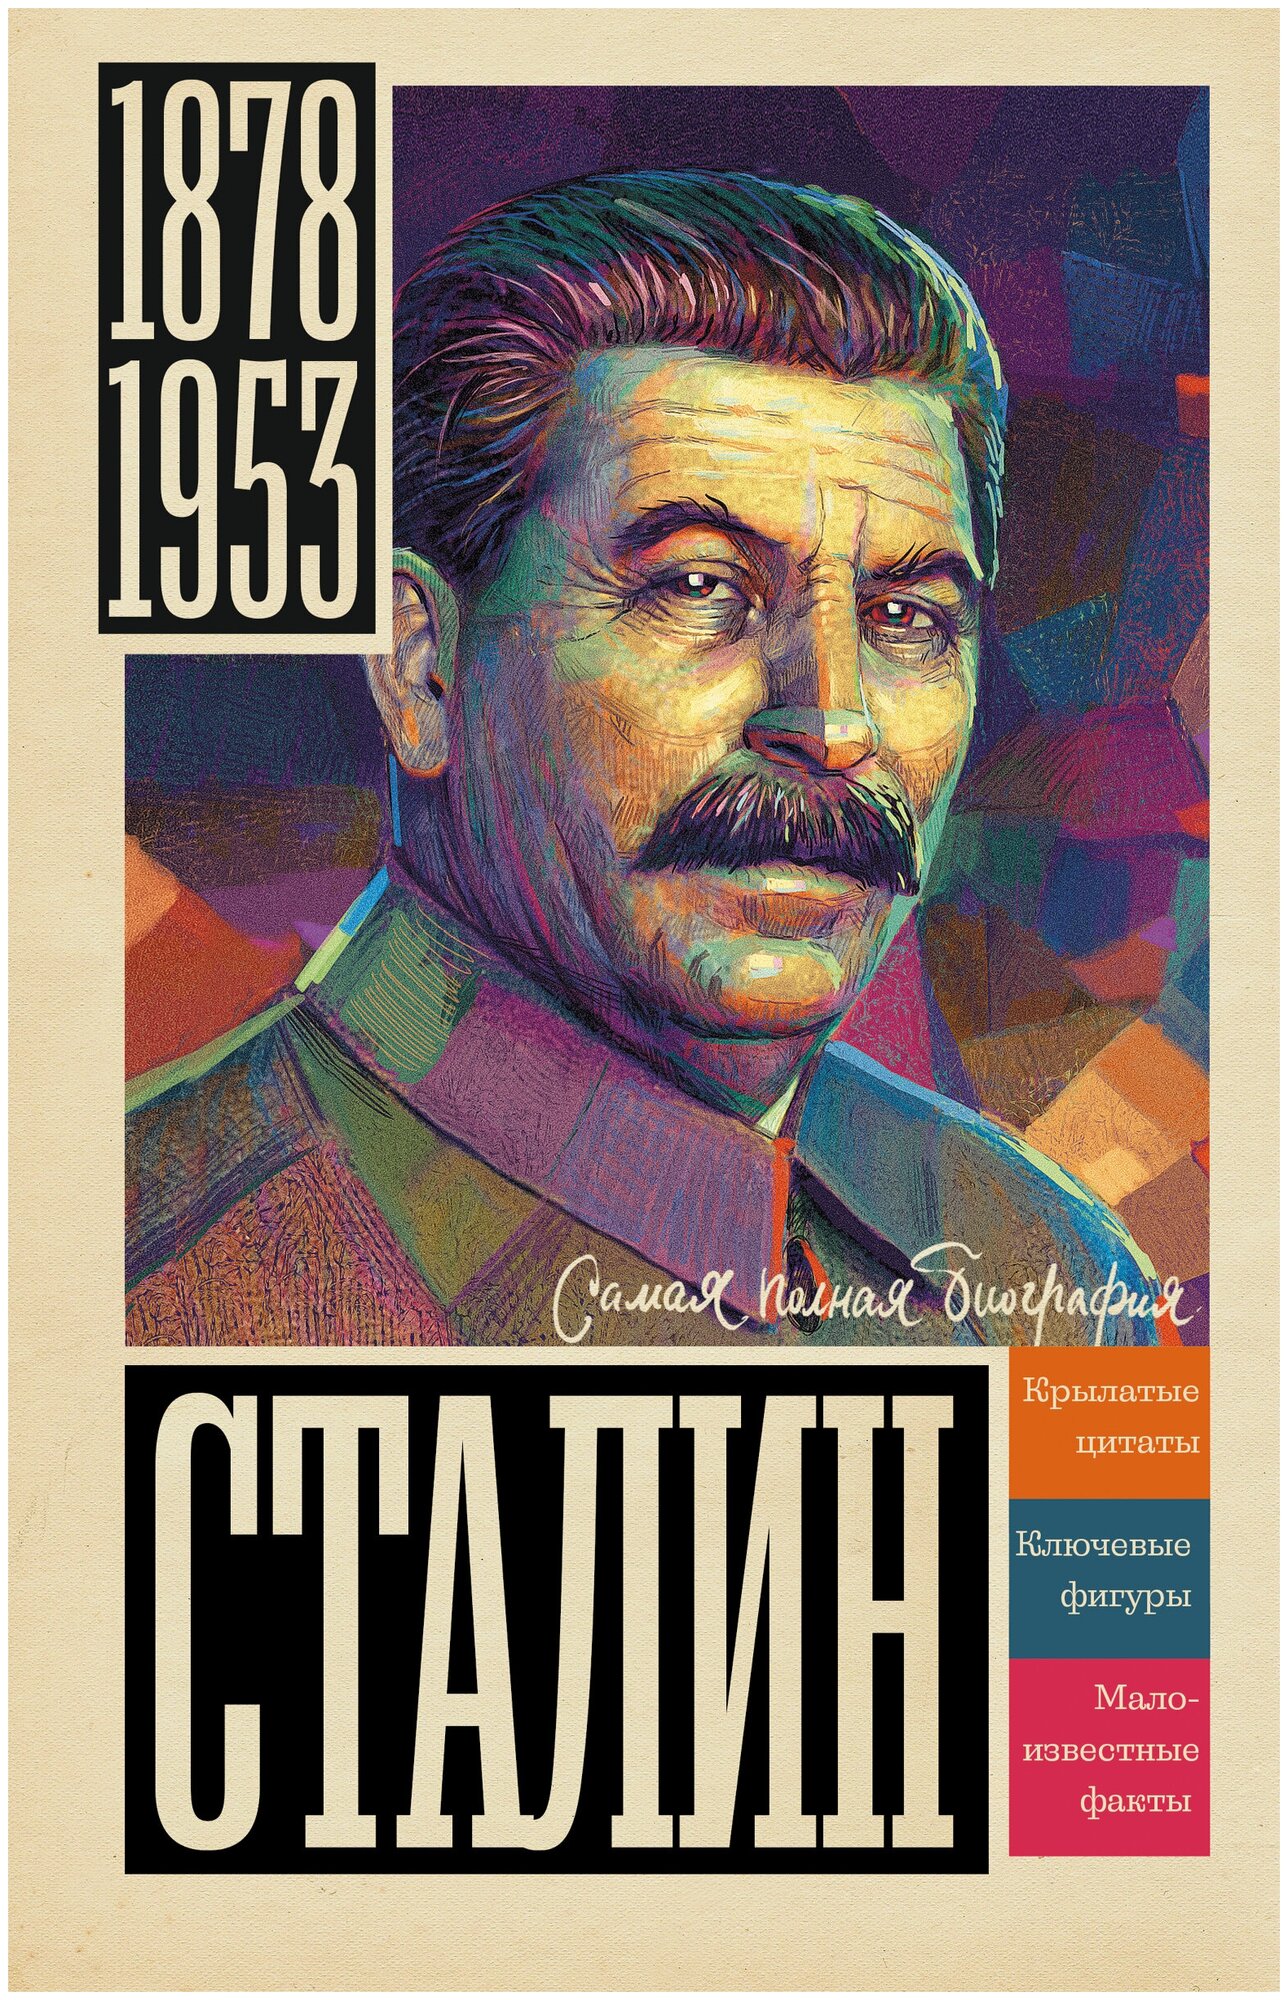 Сталин Соколов Б. В.